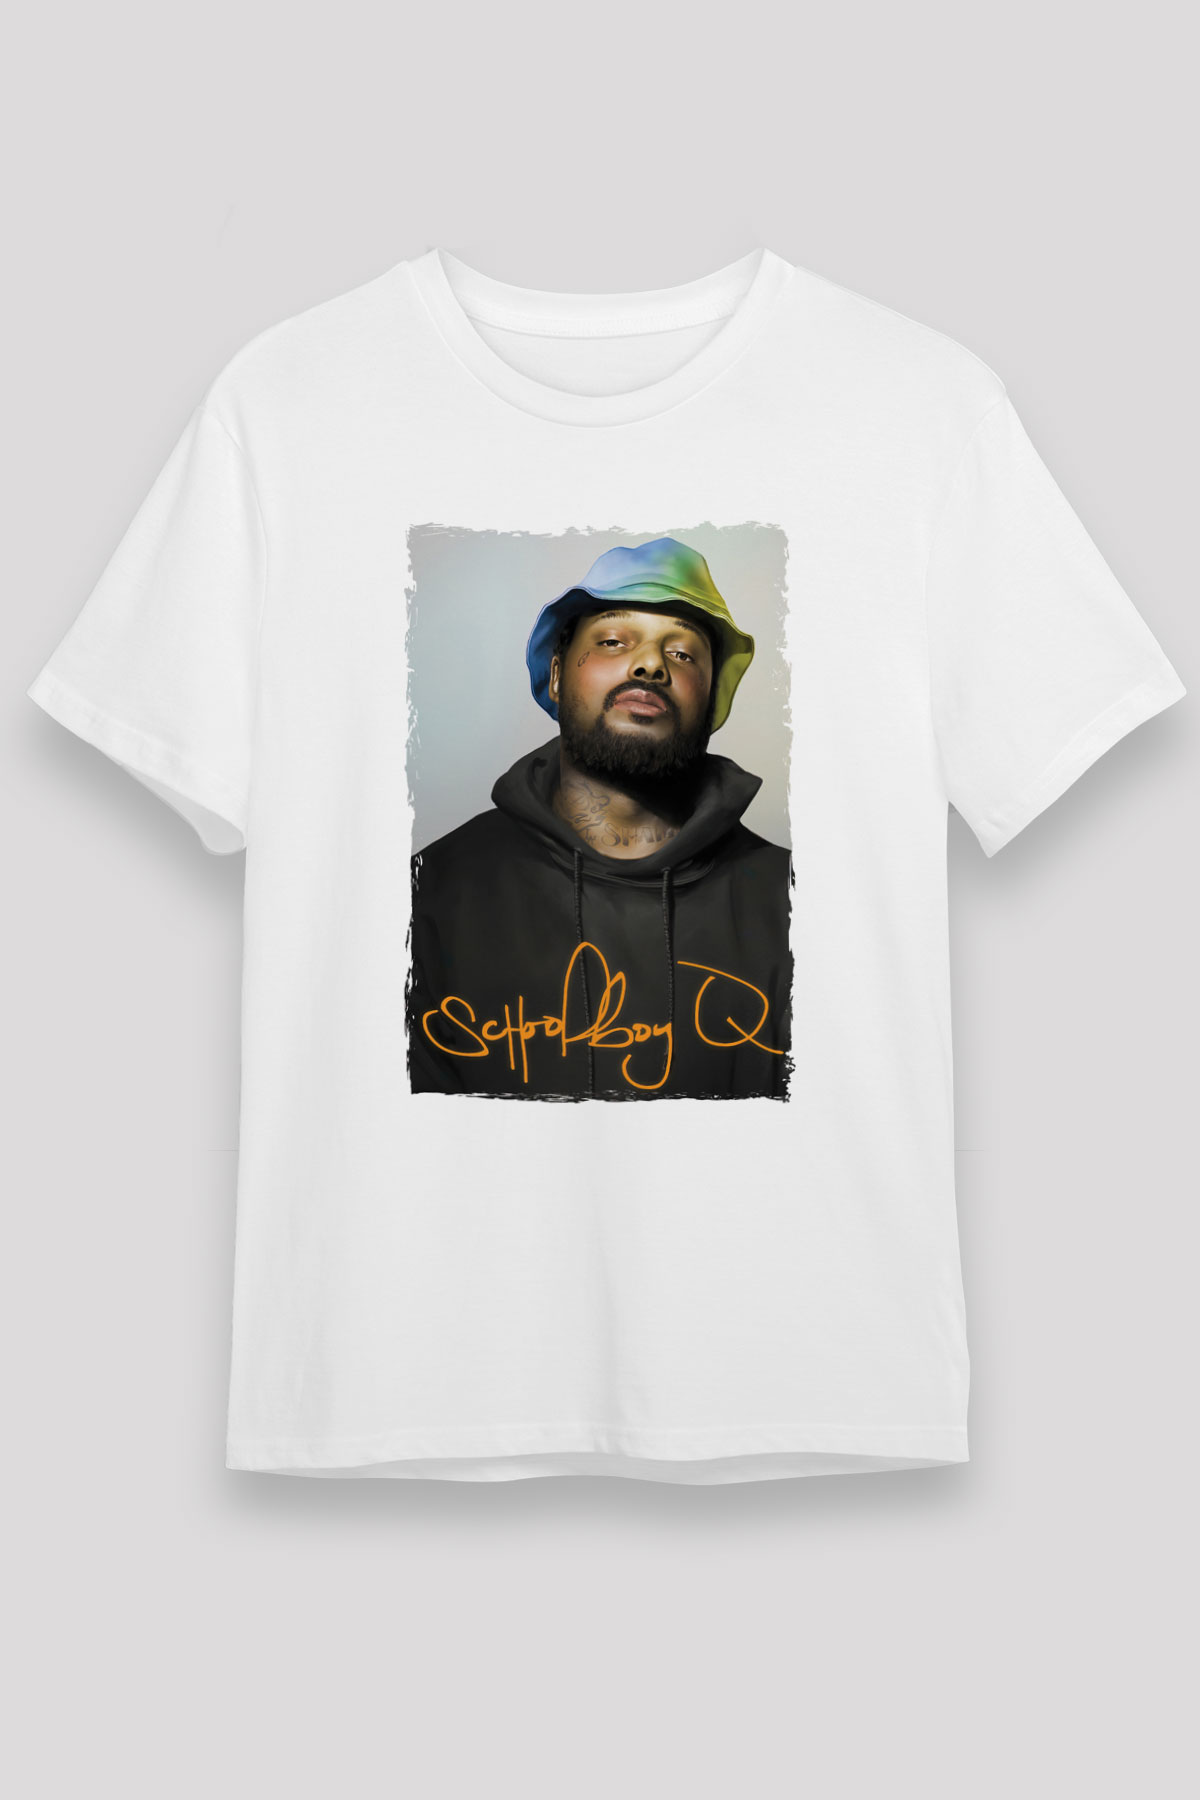 Schoolboy Q T shirt,Hip Hop,Rap Tshirt 08/